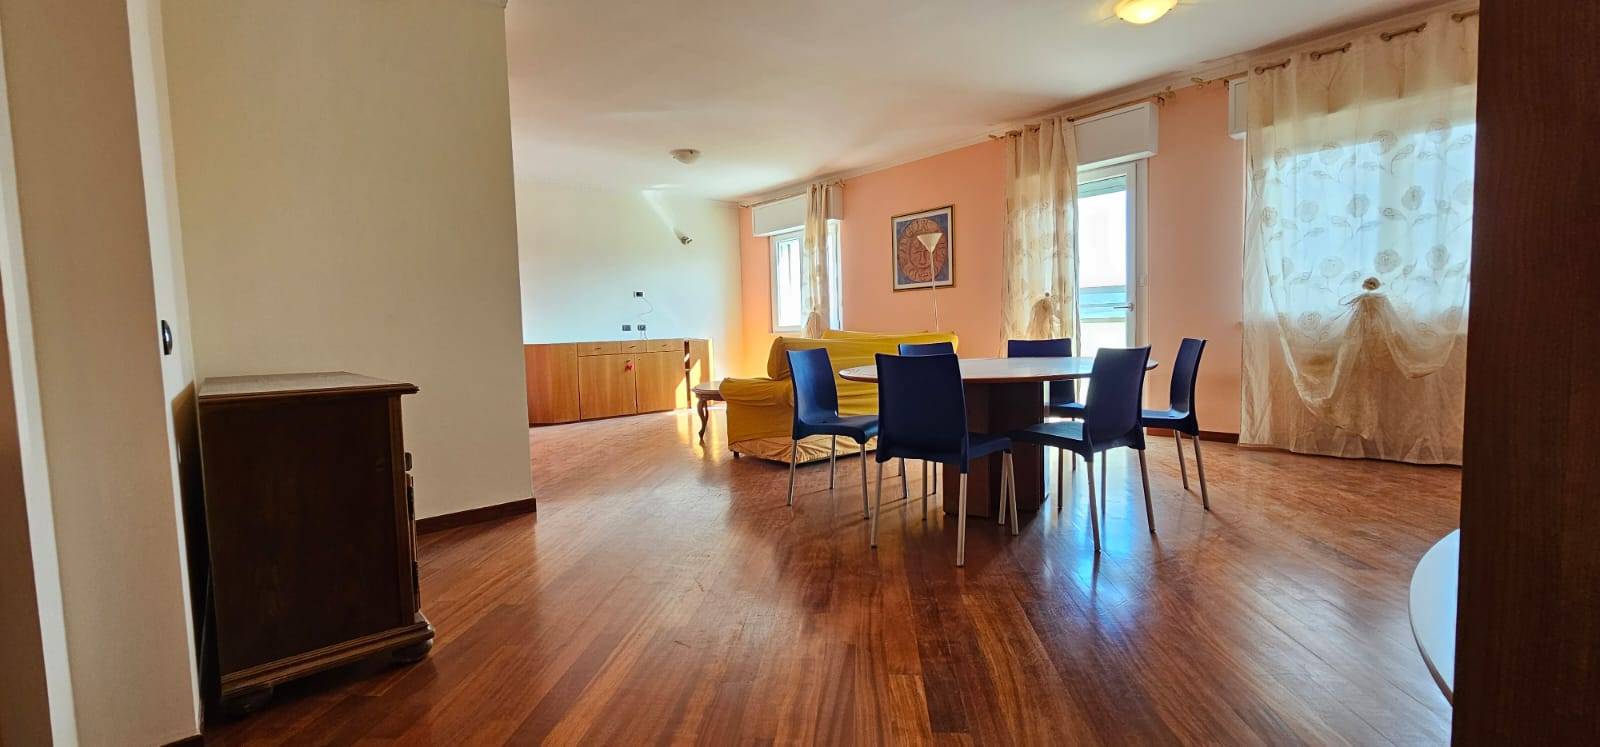 Appartamento in vendita a Teramo, 4 locali, zona Località: ColleatterratoAlto, prezzo € 119.000 | PortaleAgenzieImmobiliari.it